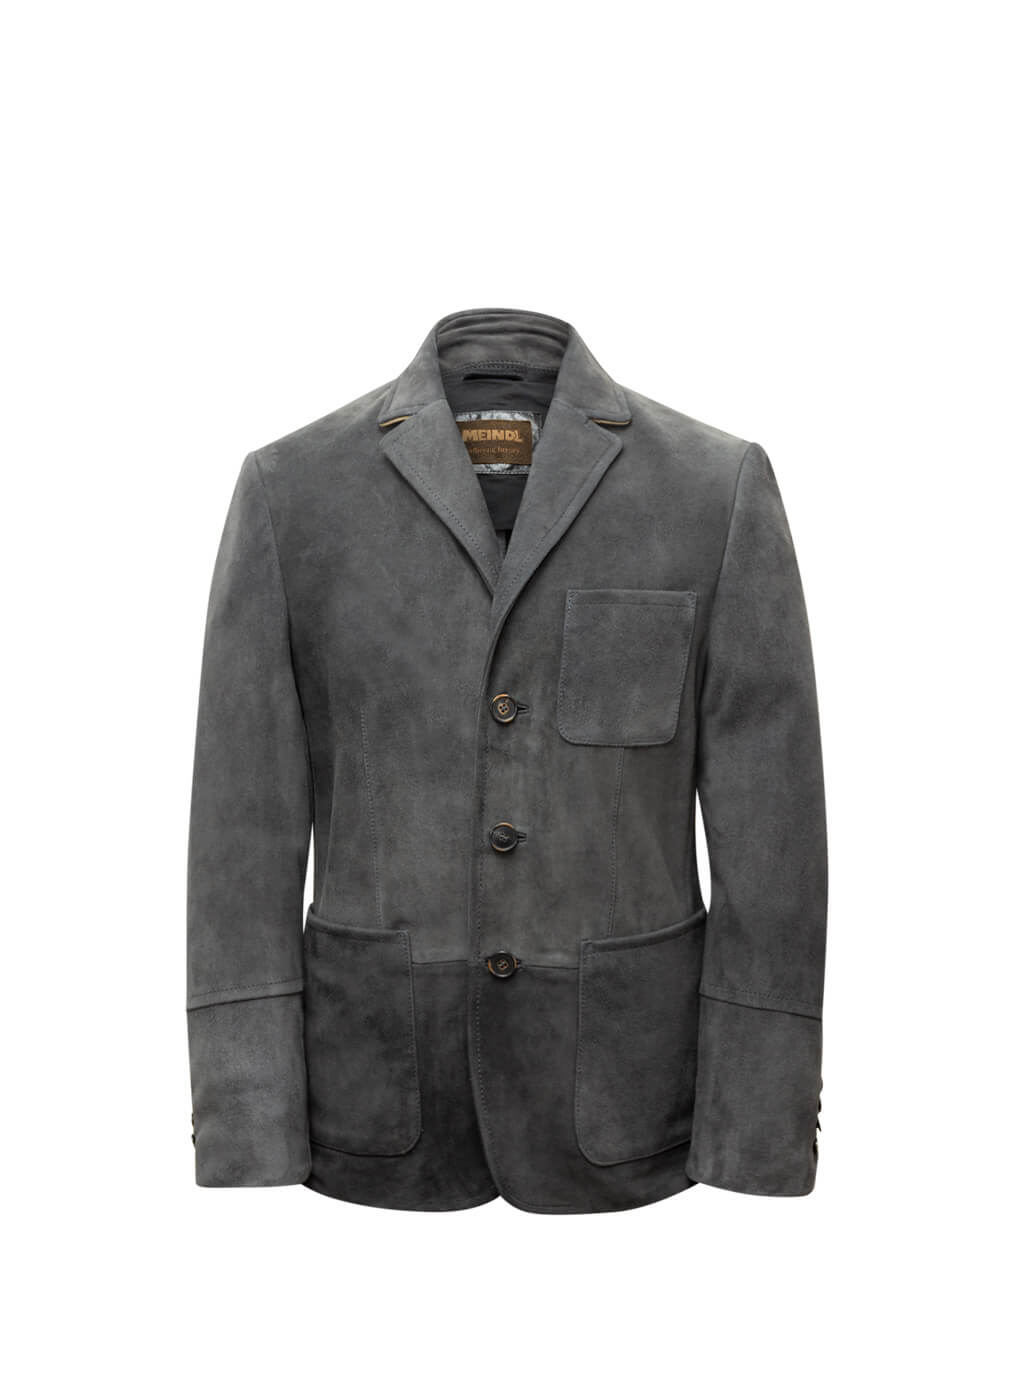 Goat Leather Jacket “Hamptons”, dusty indigo